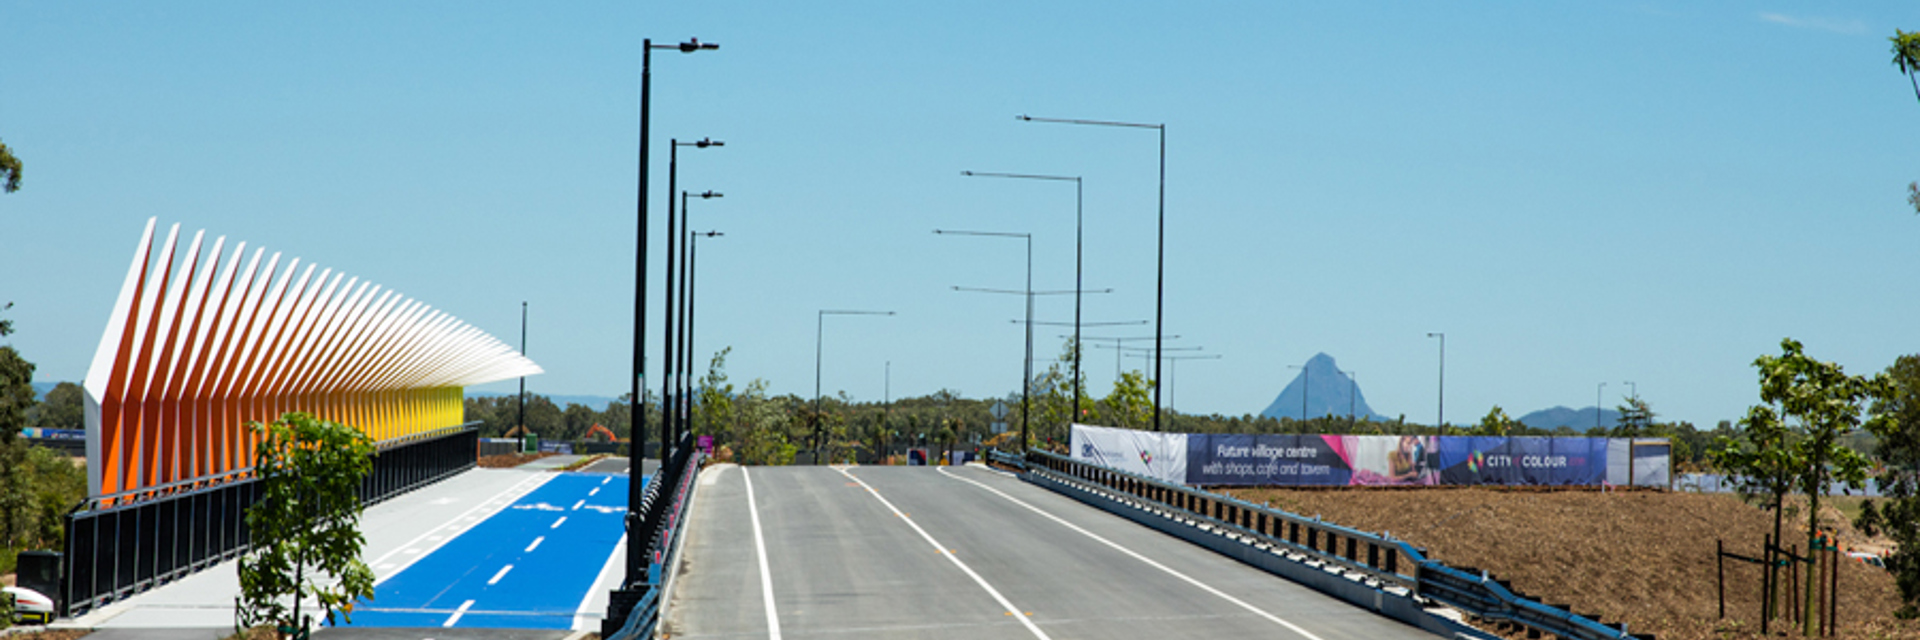 Aura Boulevard Bridge 